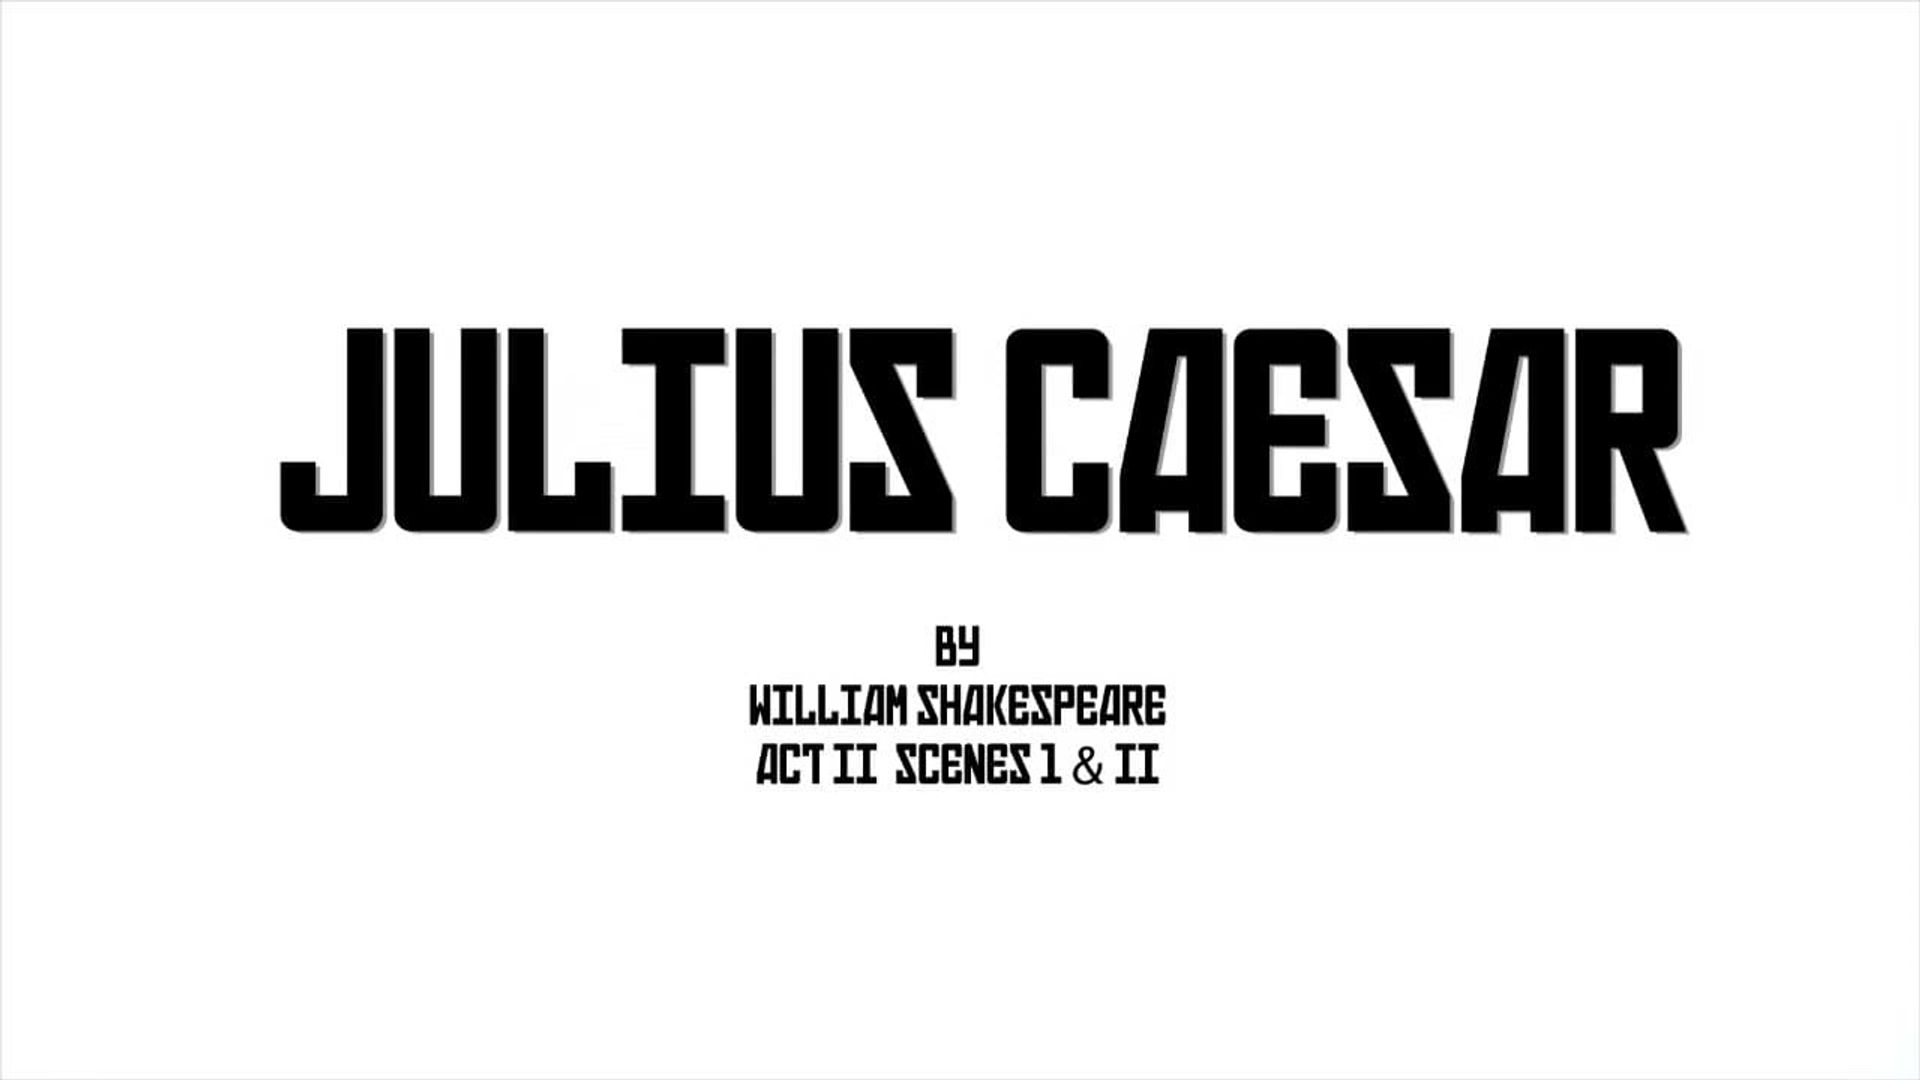 Julius Caesar background